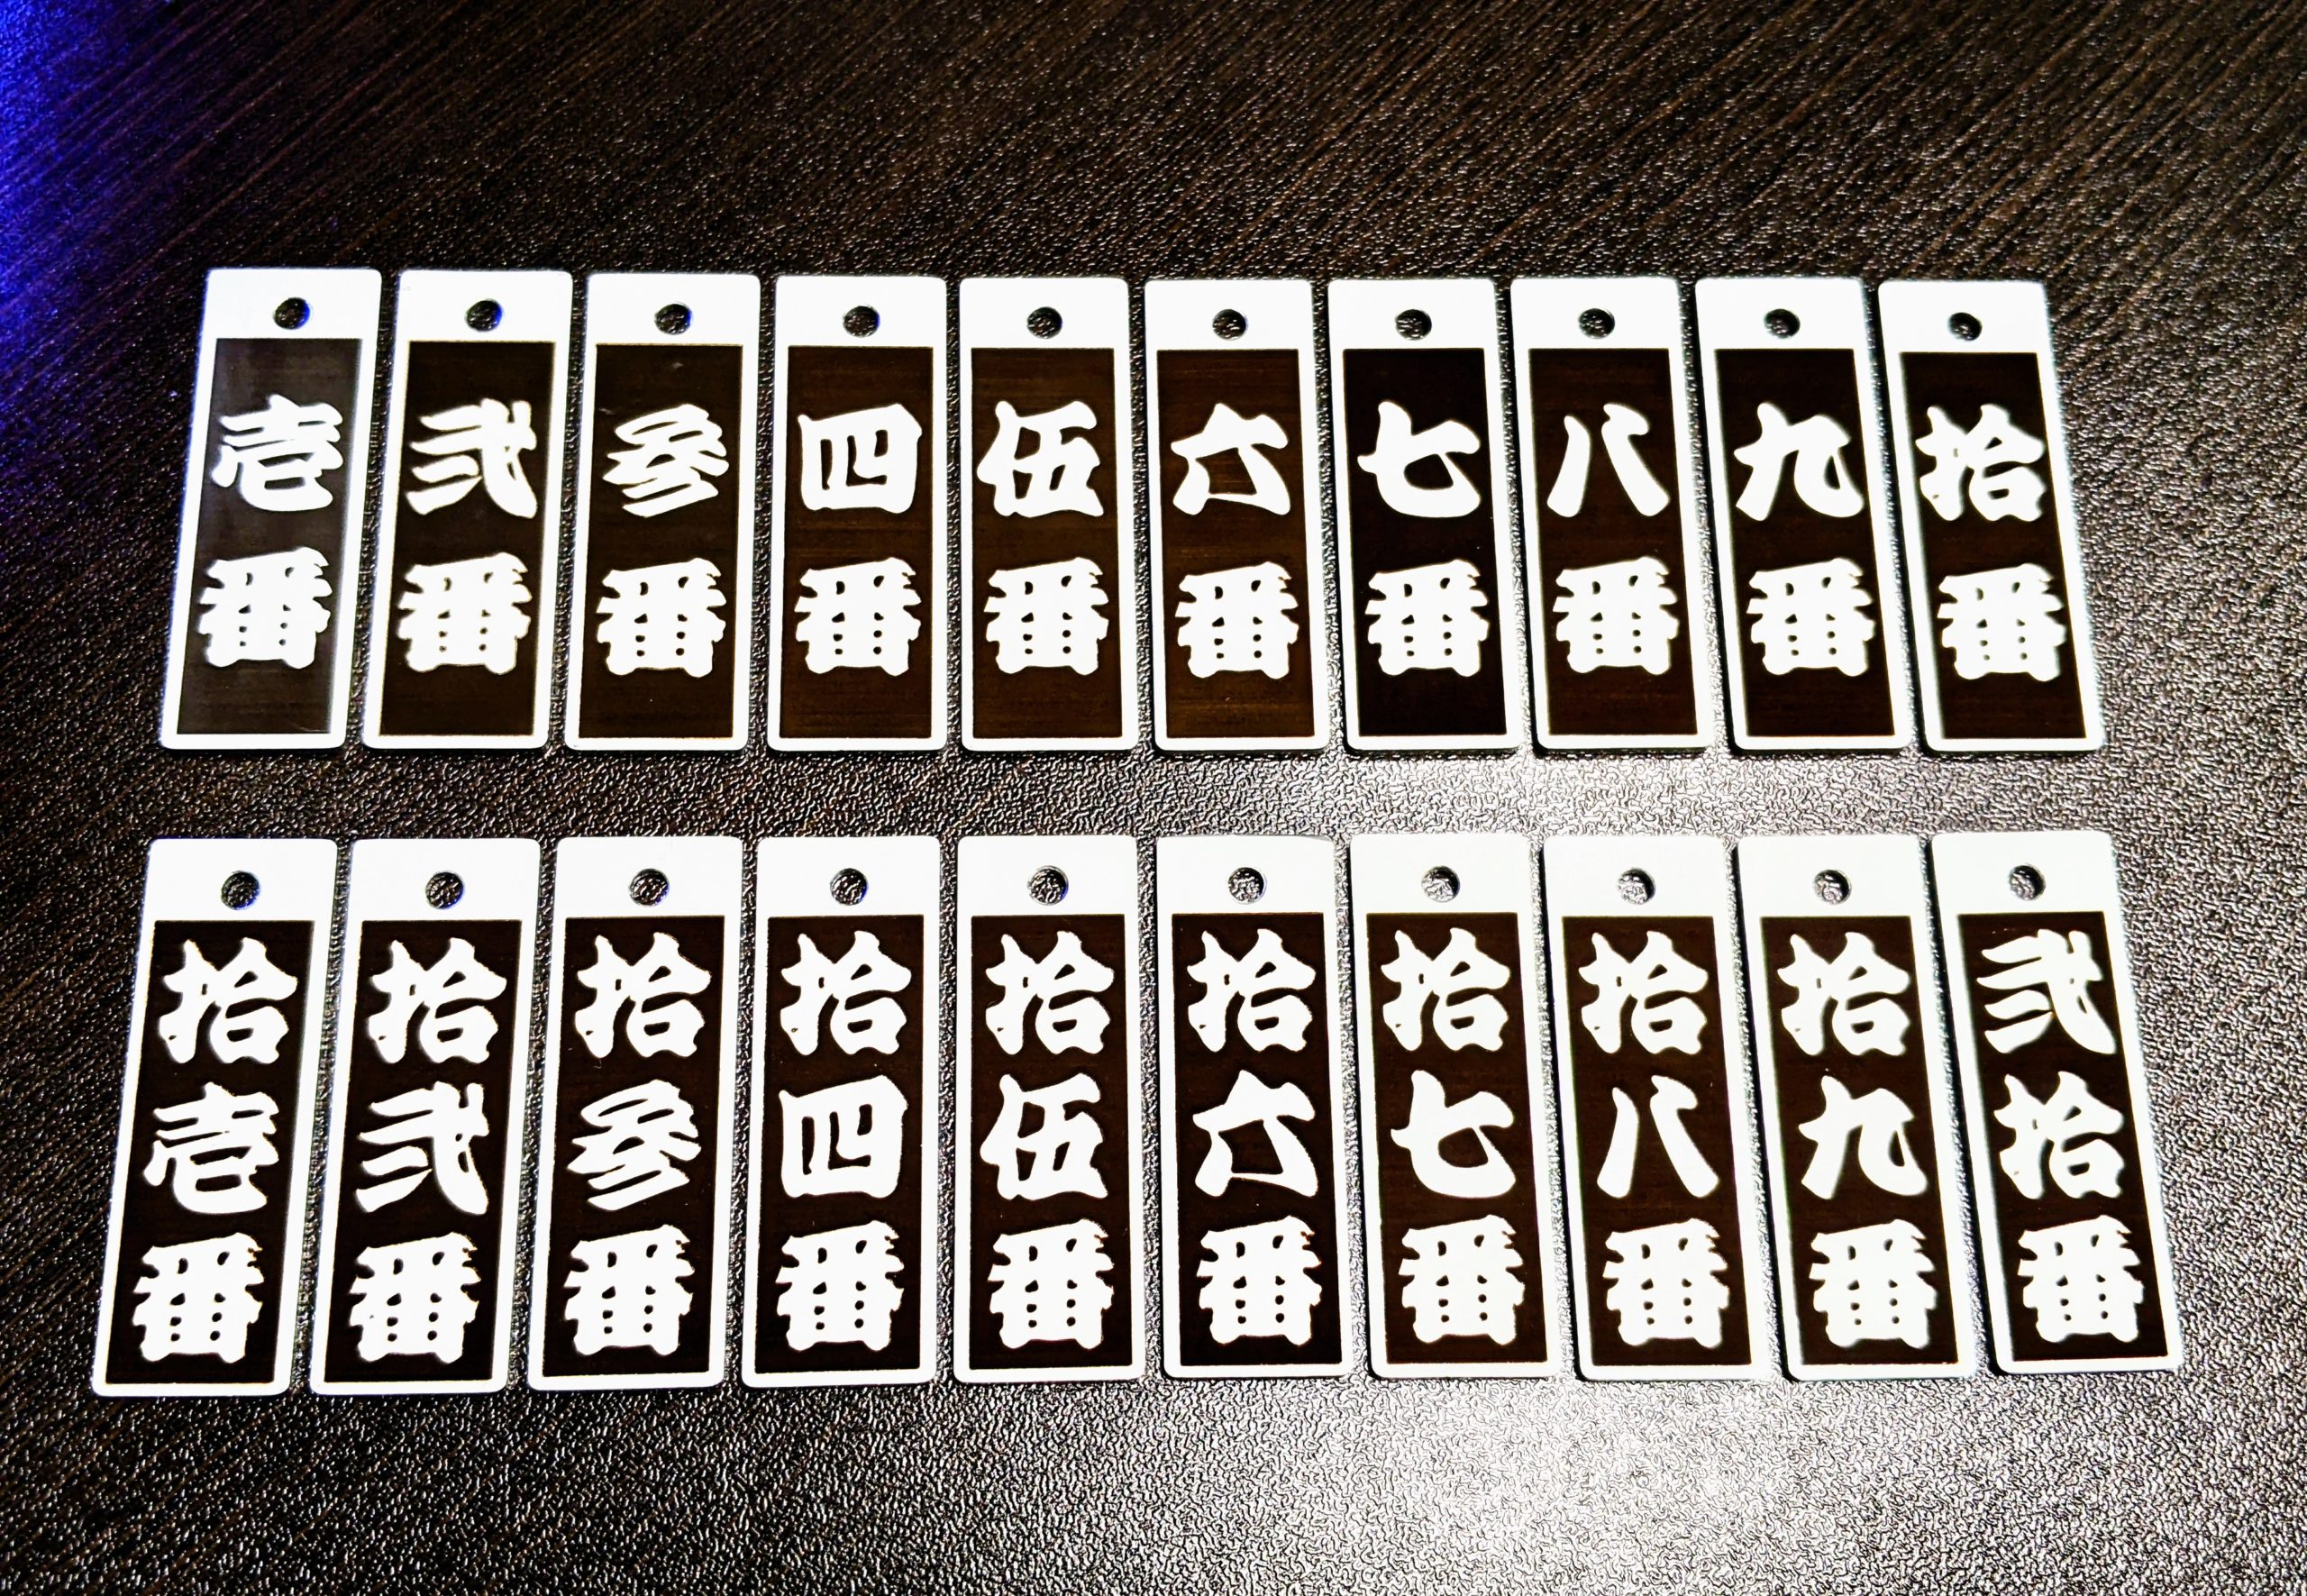 番号を江戸(籠文字)文字でレーザー刻印したオリジナルボトルキーパーの製作